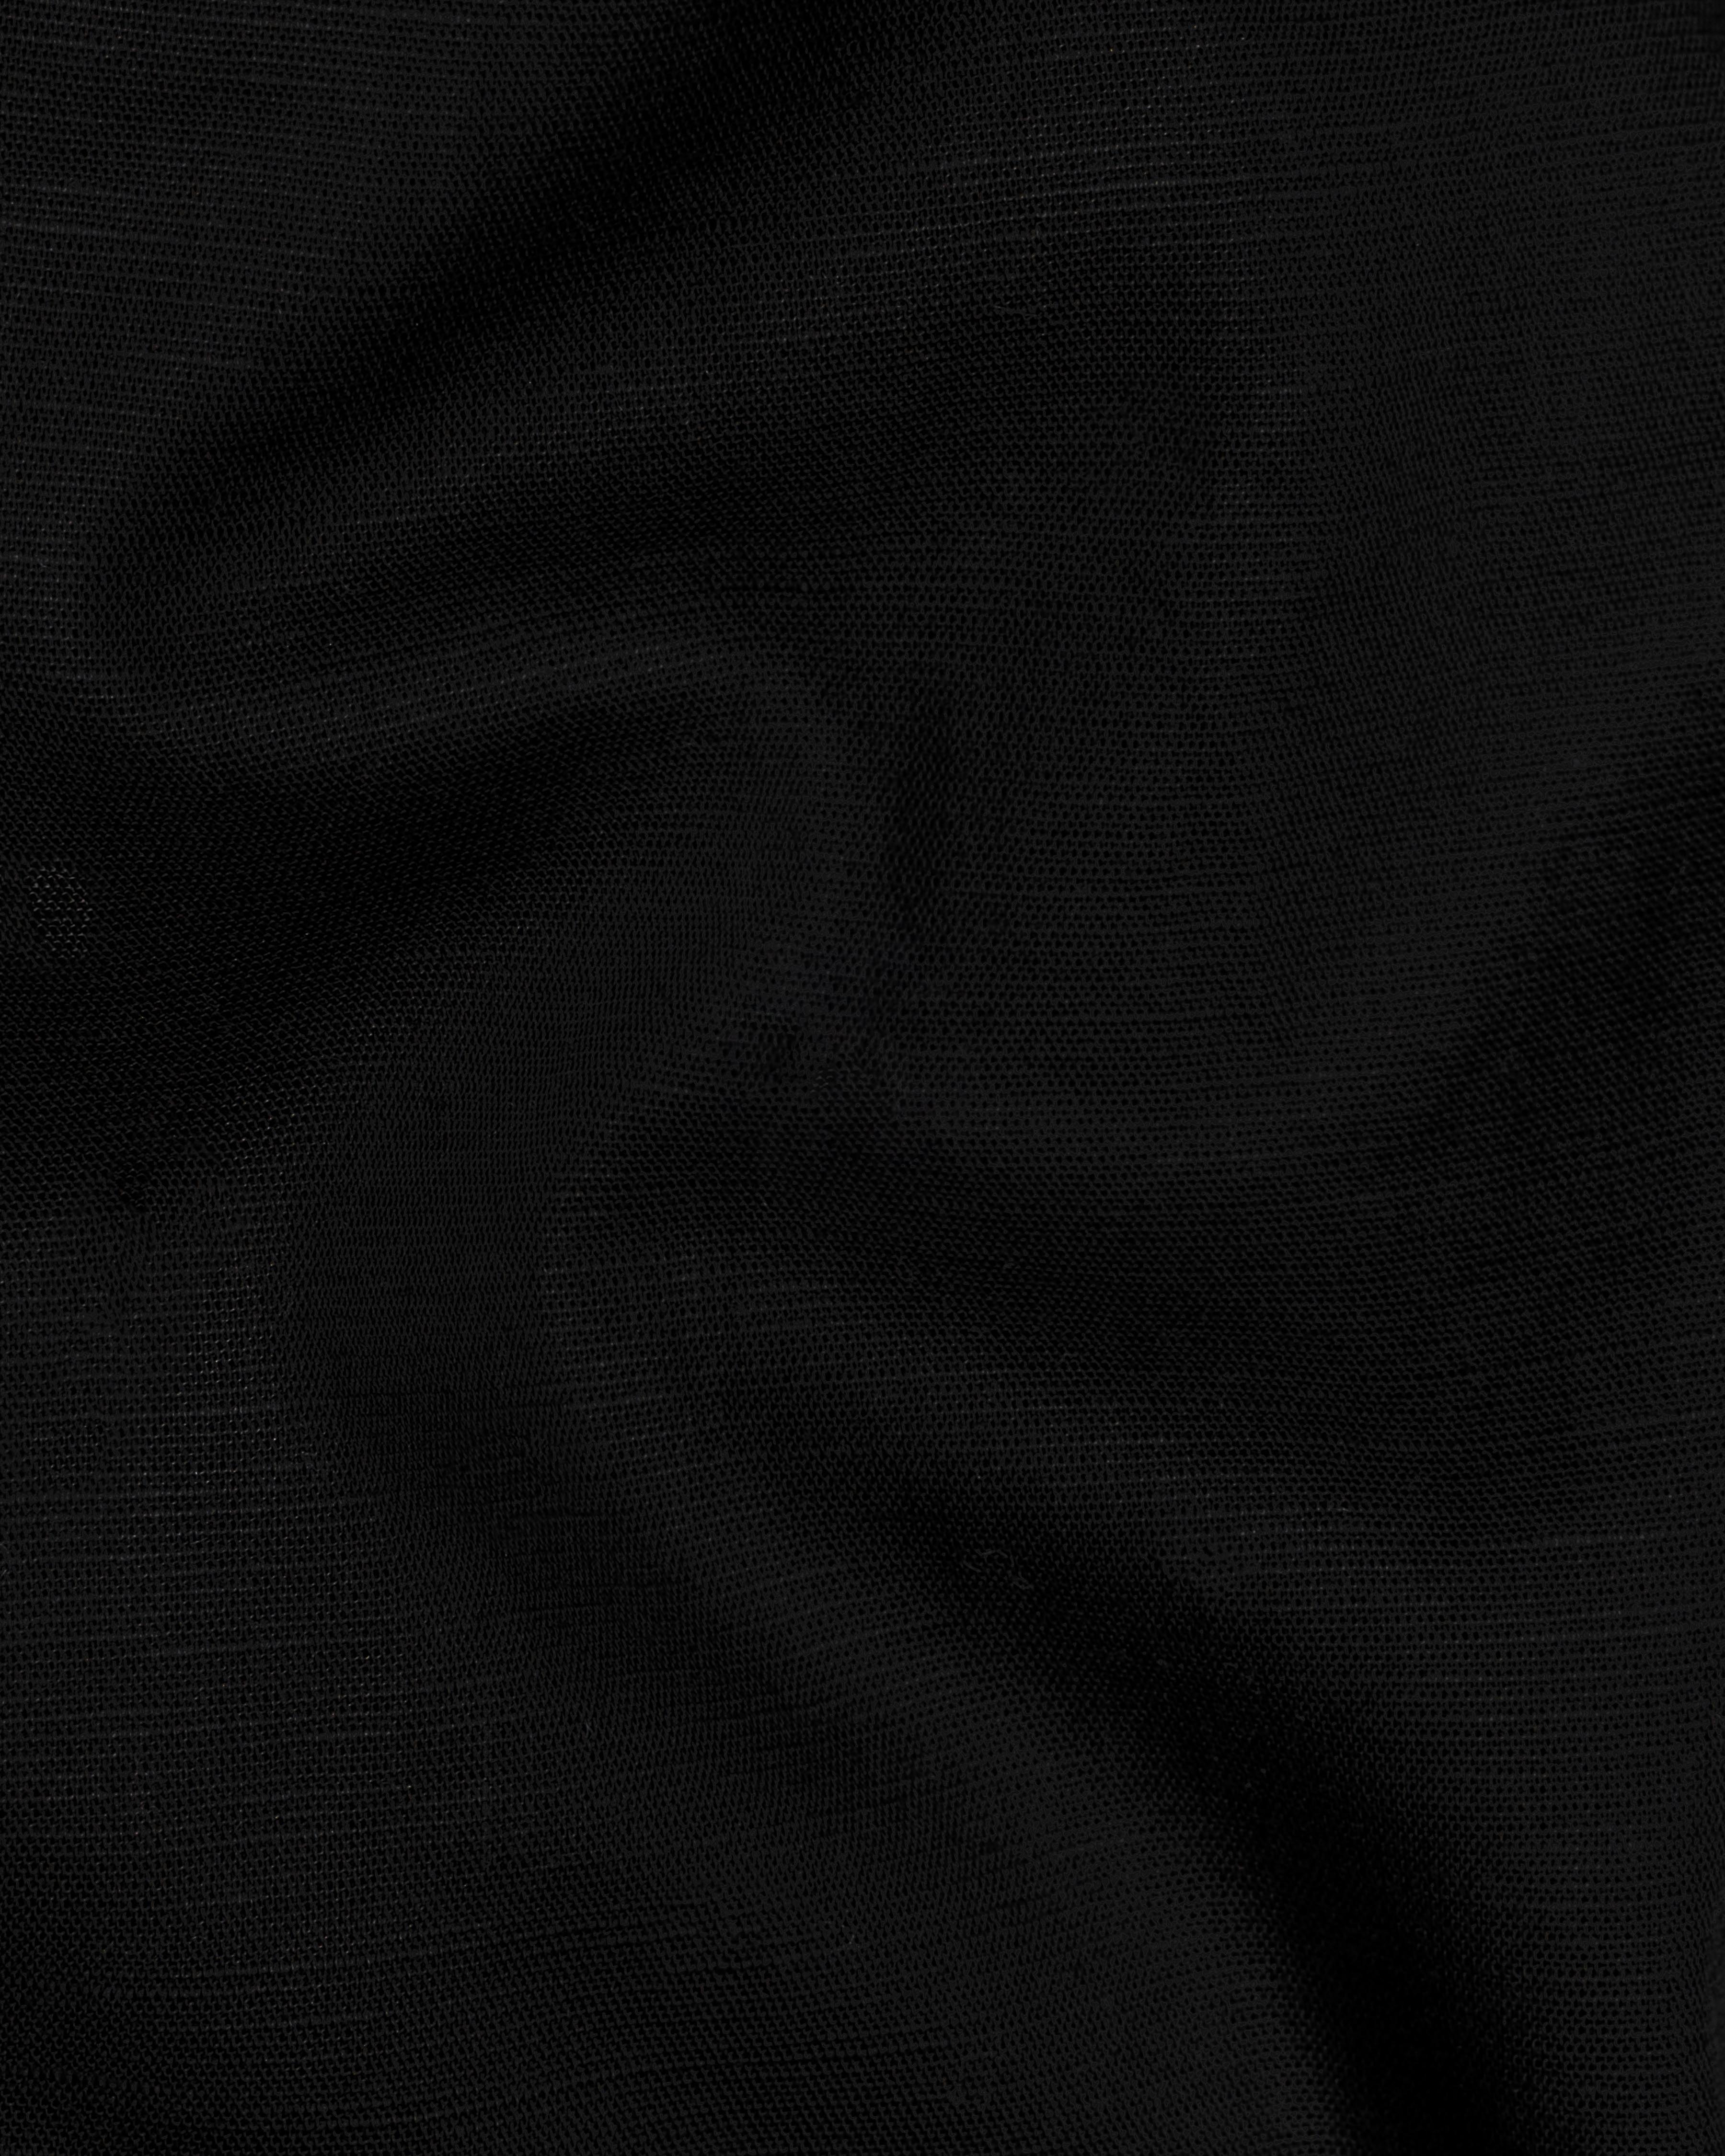 Jade Black Cuban Collar Luxurious Linen Shirt 2676CC-BLK-38, 2676CC-BLK-H-38, 2676CC-BLK-39, 2676CC-BLK-H-39, 2676CC-BLK-40, 2676CC-BLK-H-40, 2676CC-BLK-42, 2676CC-BLK-H-42, 2676CC-BLK-44, 2676CC-BLK-H-44, 2676CC-BLK-46, 2676CC-BLK-H-46, 2676CC-BLK-48, 2676CC-BLK-H-48, 2676CC-BLK-50, 2676CC-BLK-H-50, 2676CC-BLK-52, 2676CC-BLK-H-52